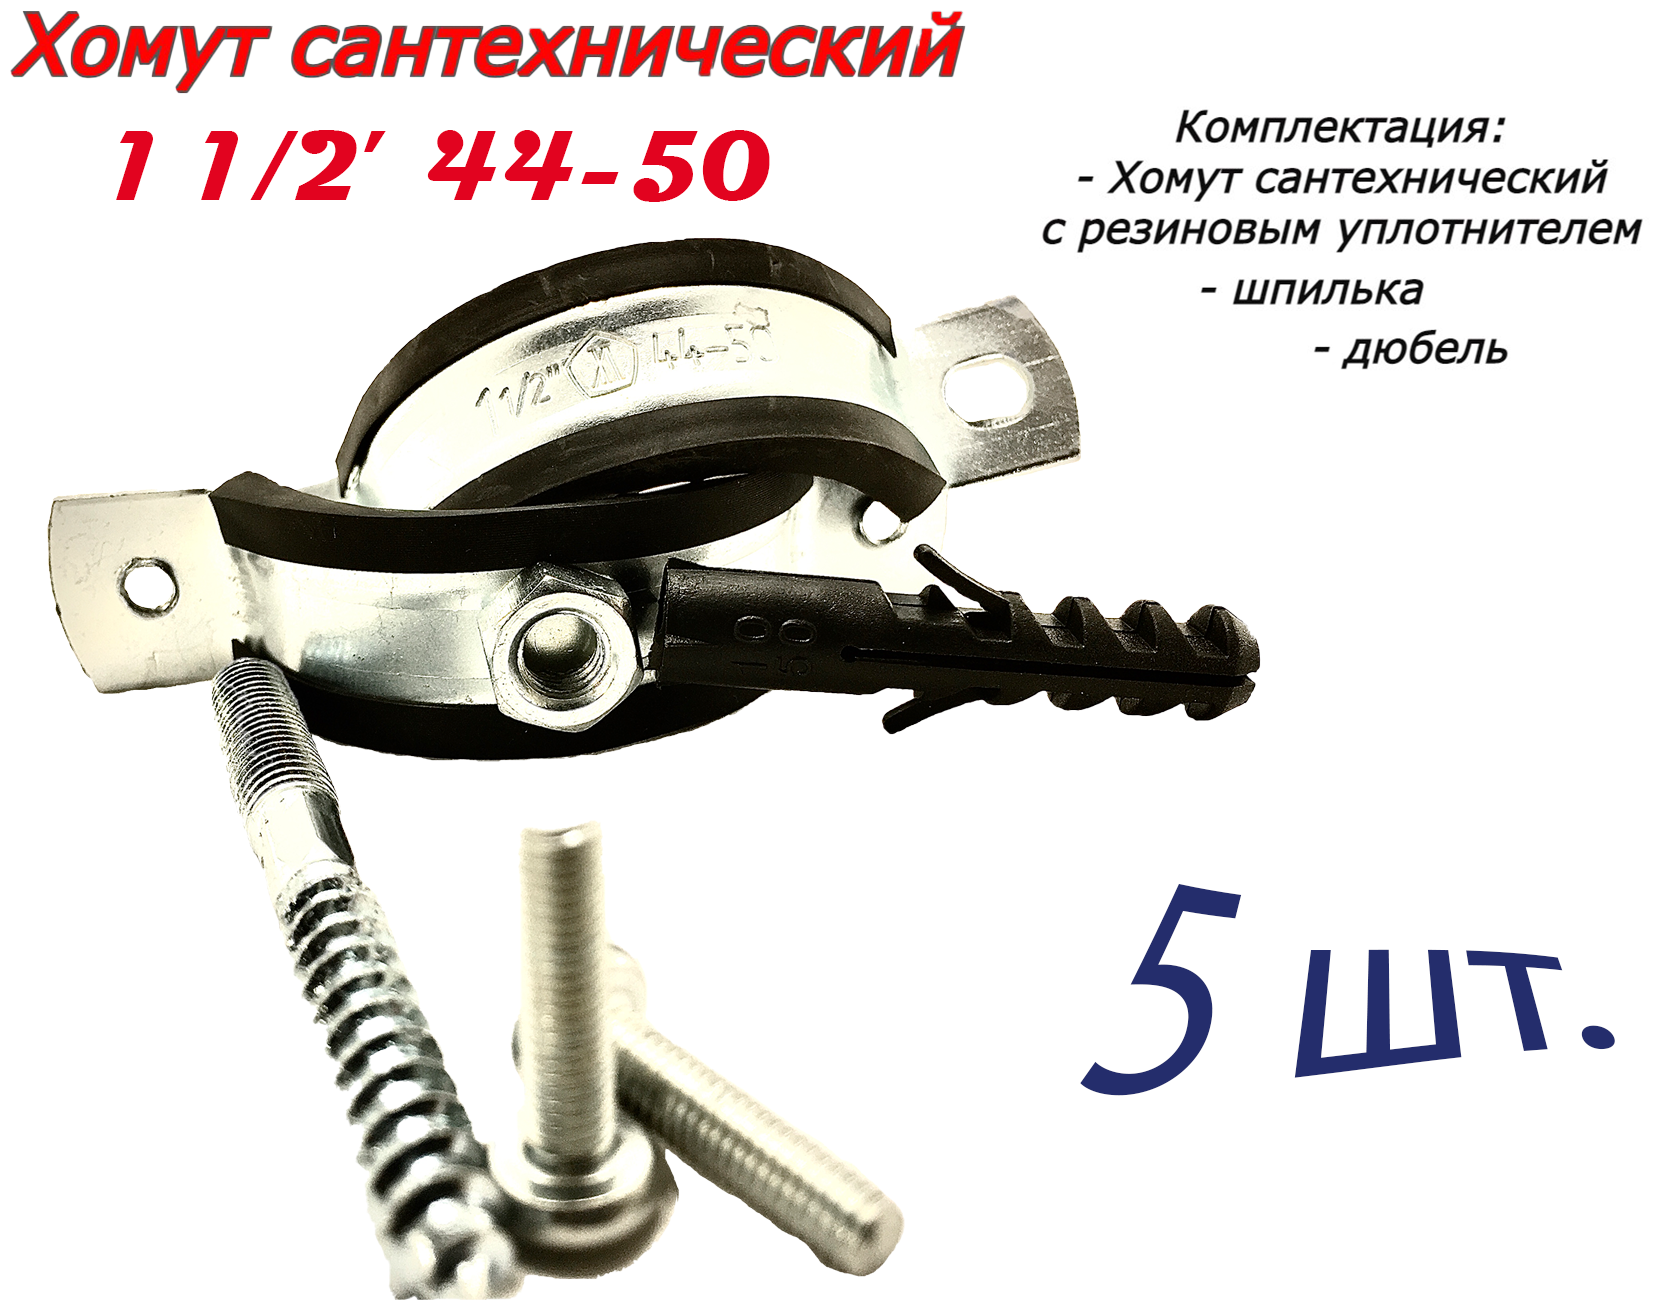 Хомут сантехнический D1" 1/2 44-50 (5 шт) для труб с резиновым уплотнением, шпилькой и дюбелем - фотография № 1